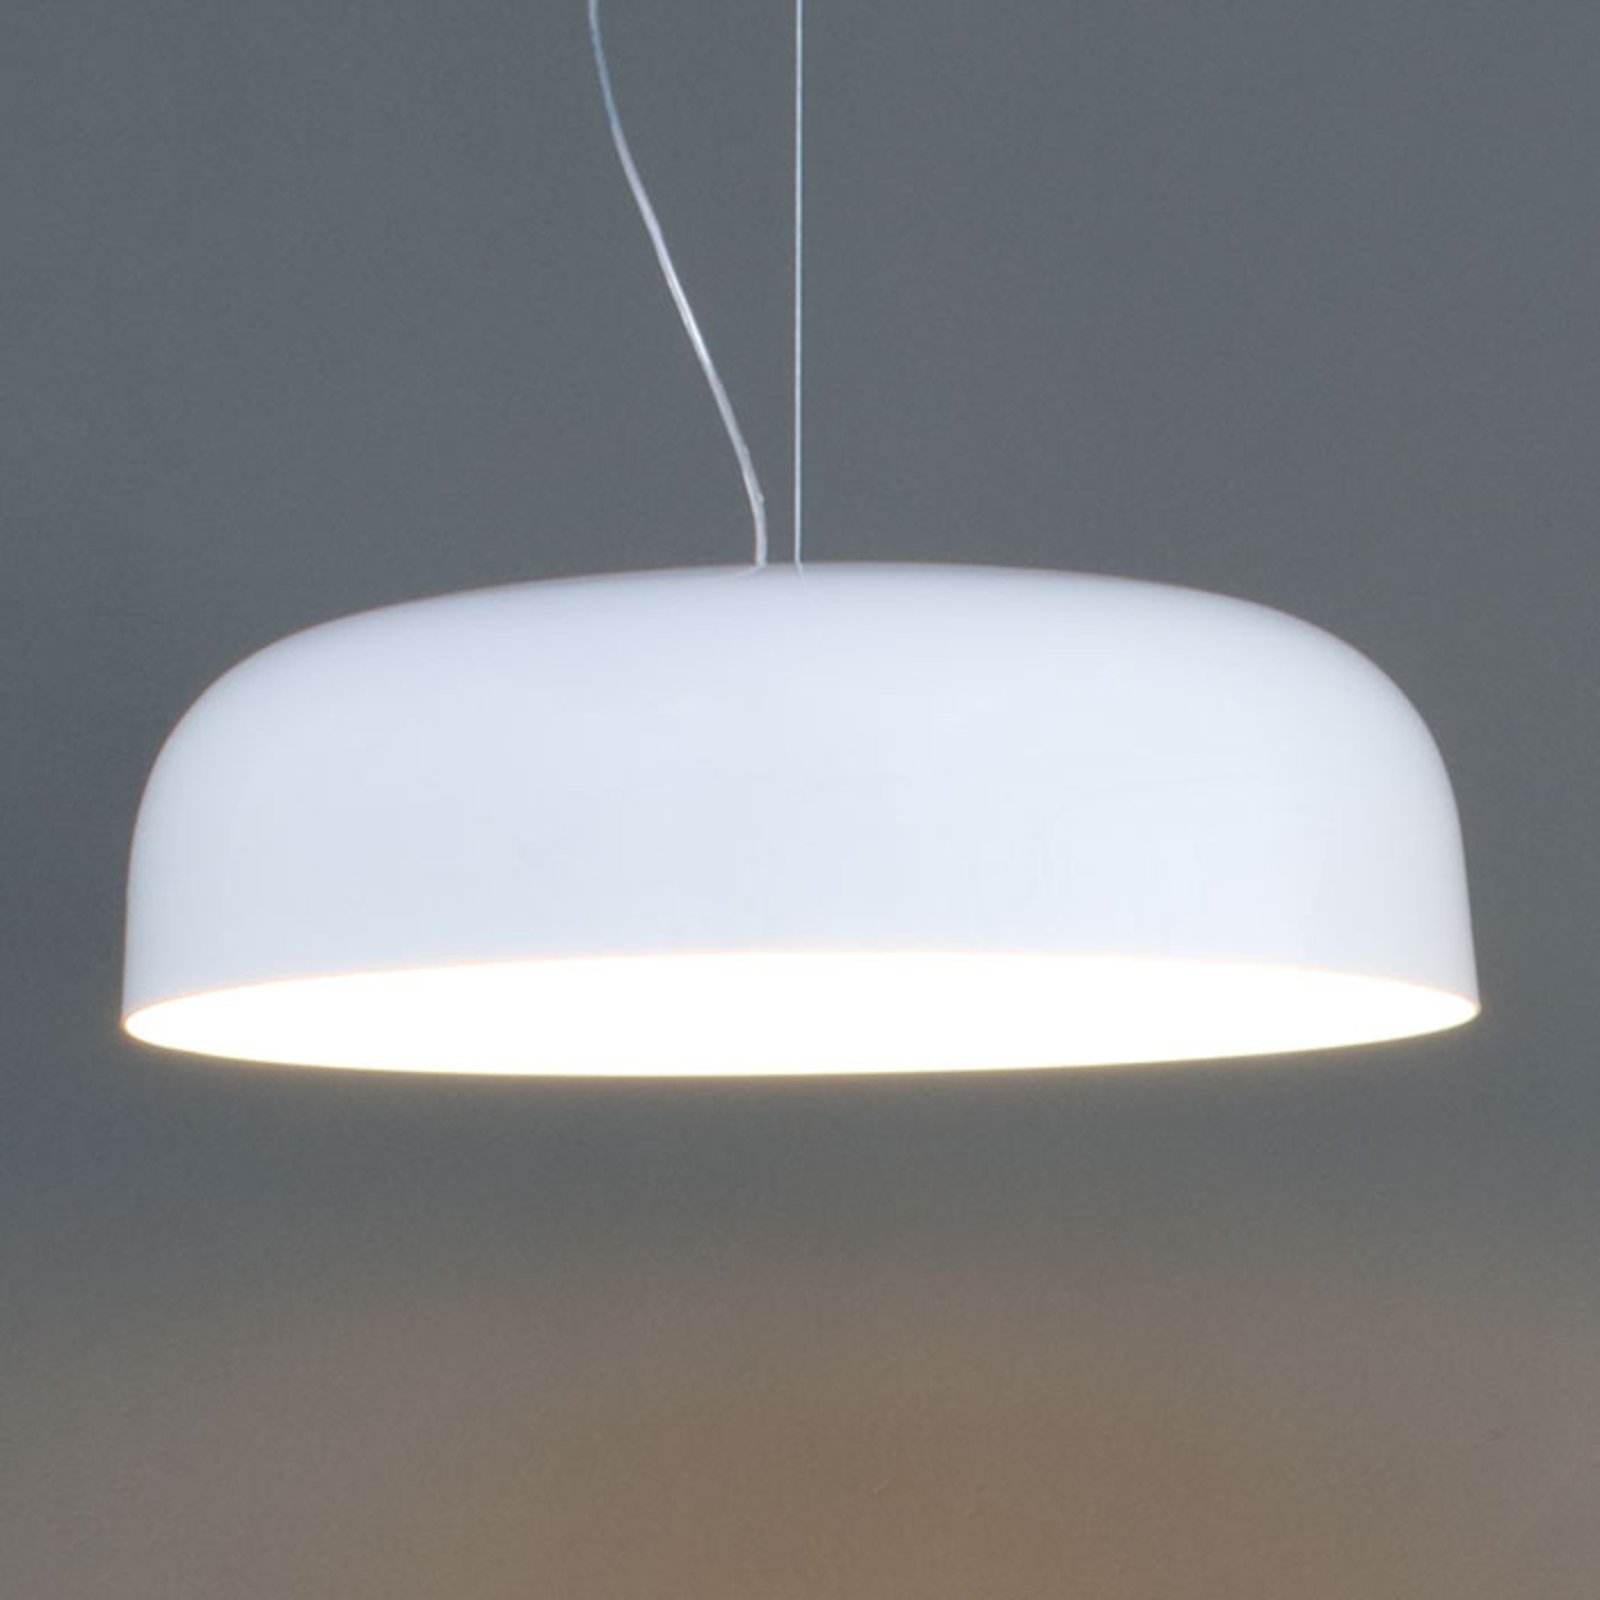 Szykowna lampa wisząca CANOPY, 60 cm, biała